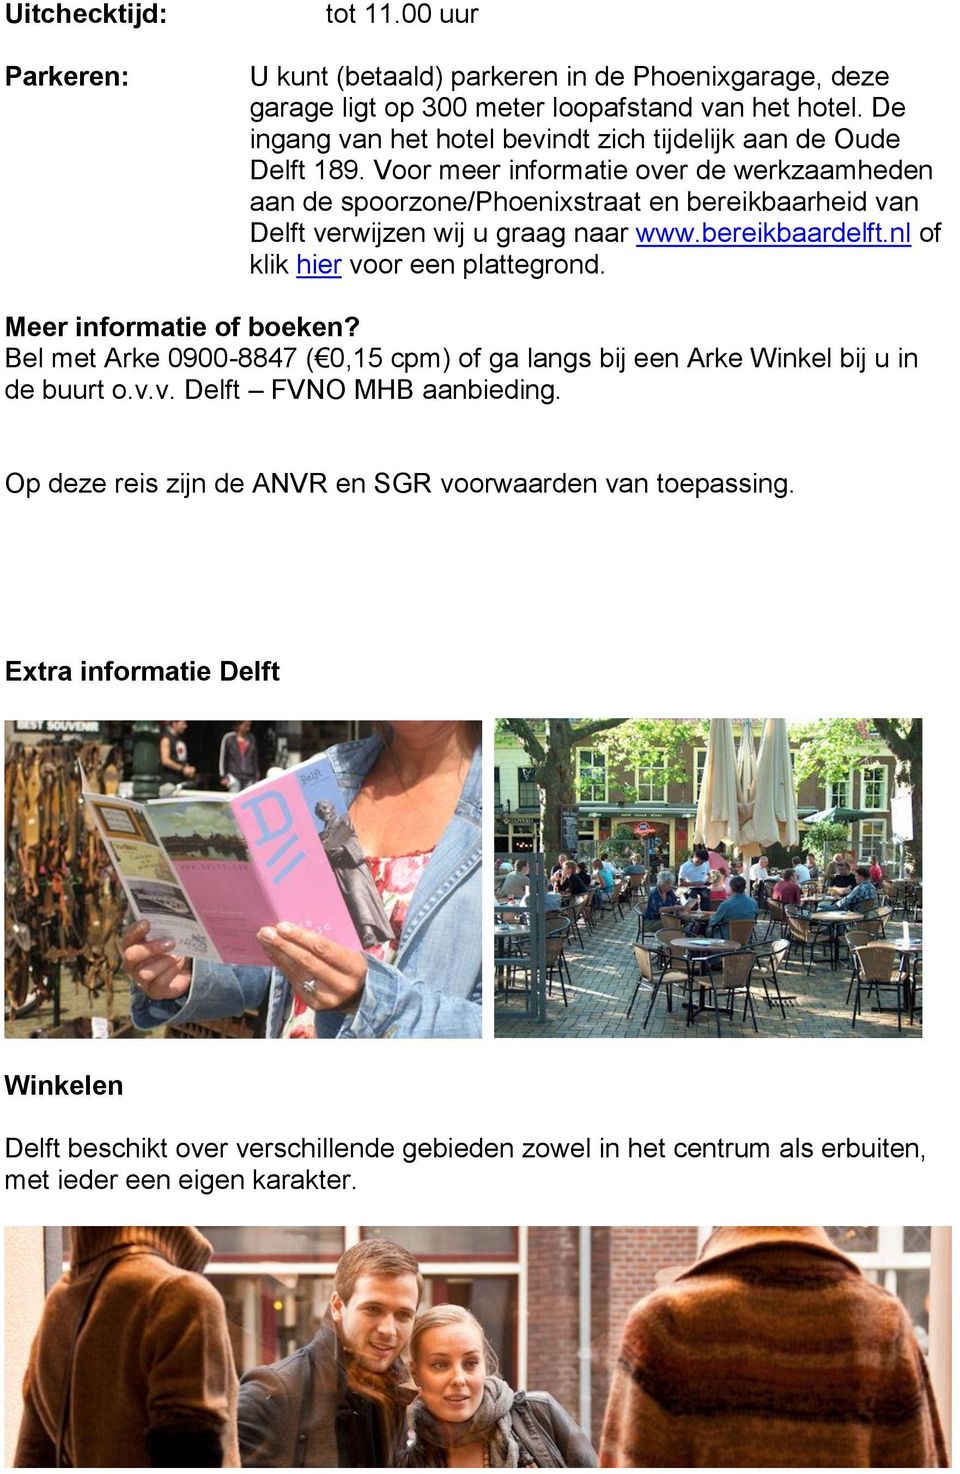 Voor meer informatie over de werkzaamheden aan de spoorzone/phoenixstraat en bereikbaarheid van Delft verwijzen wij u graag naar www.bereikbaardelft.nl of klik hier voor een plattegrond.